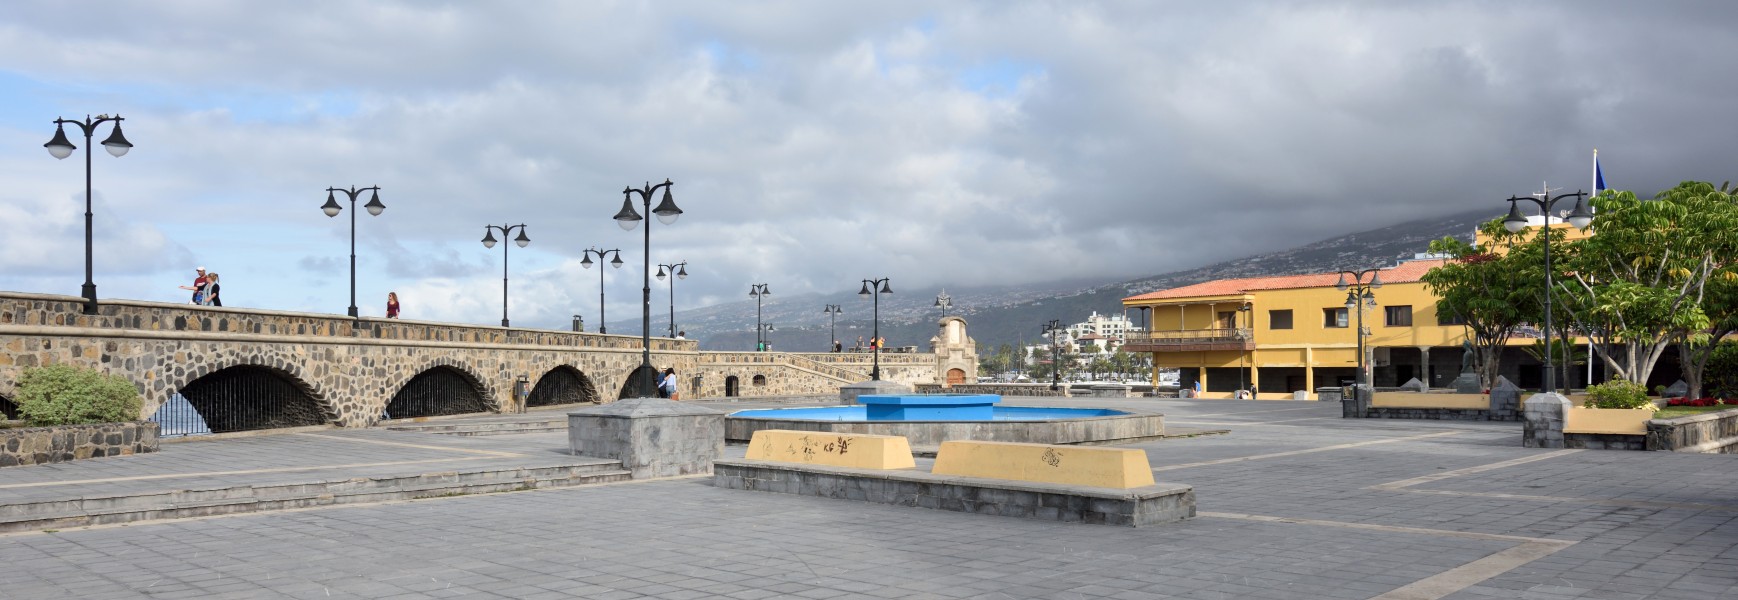 Puerto de la Cruz – Plaza de Europa Dec 2016